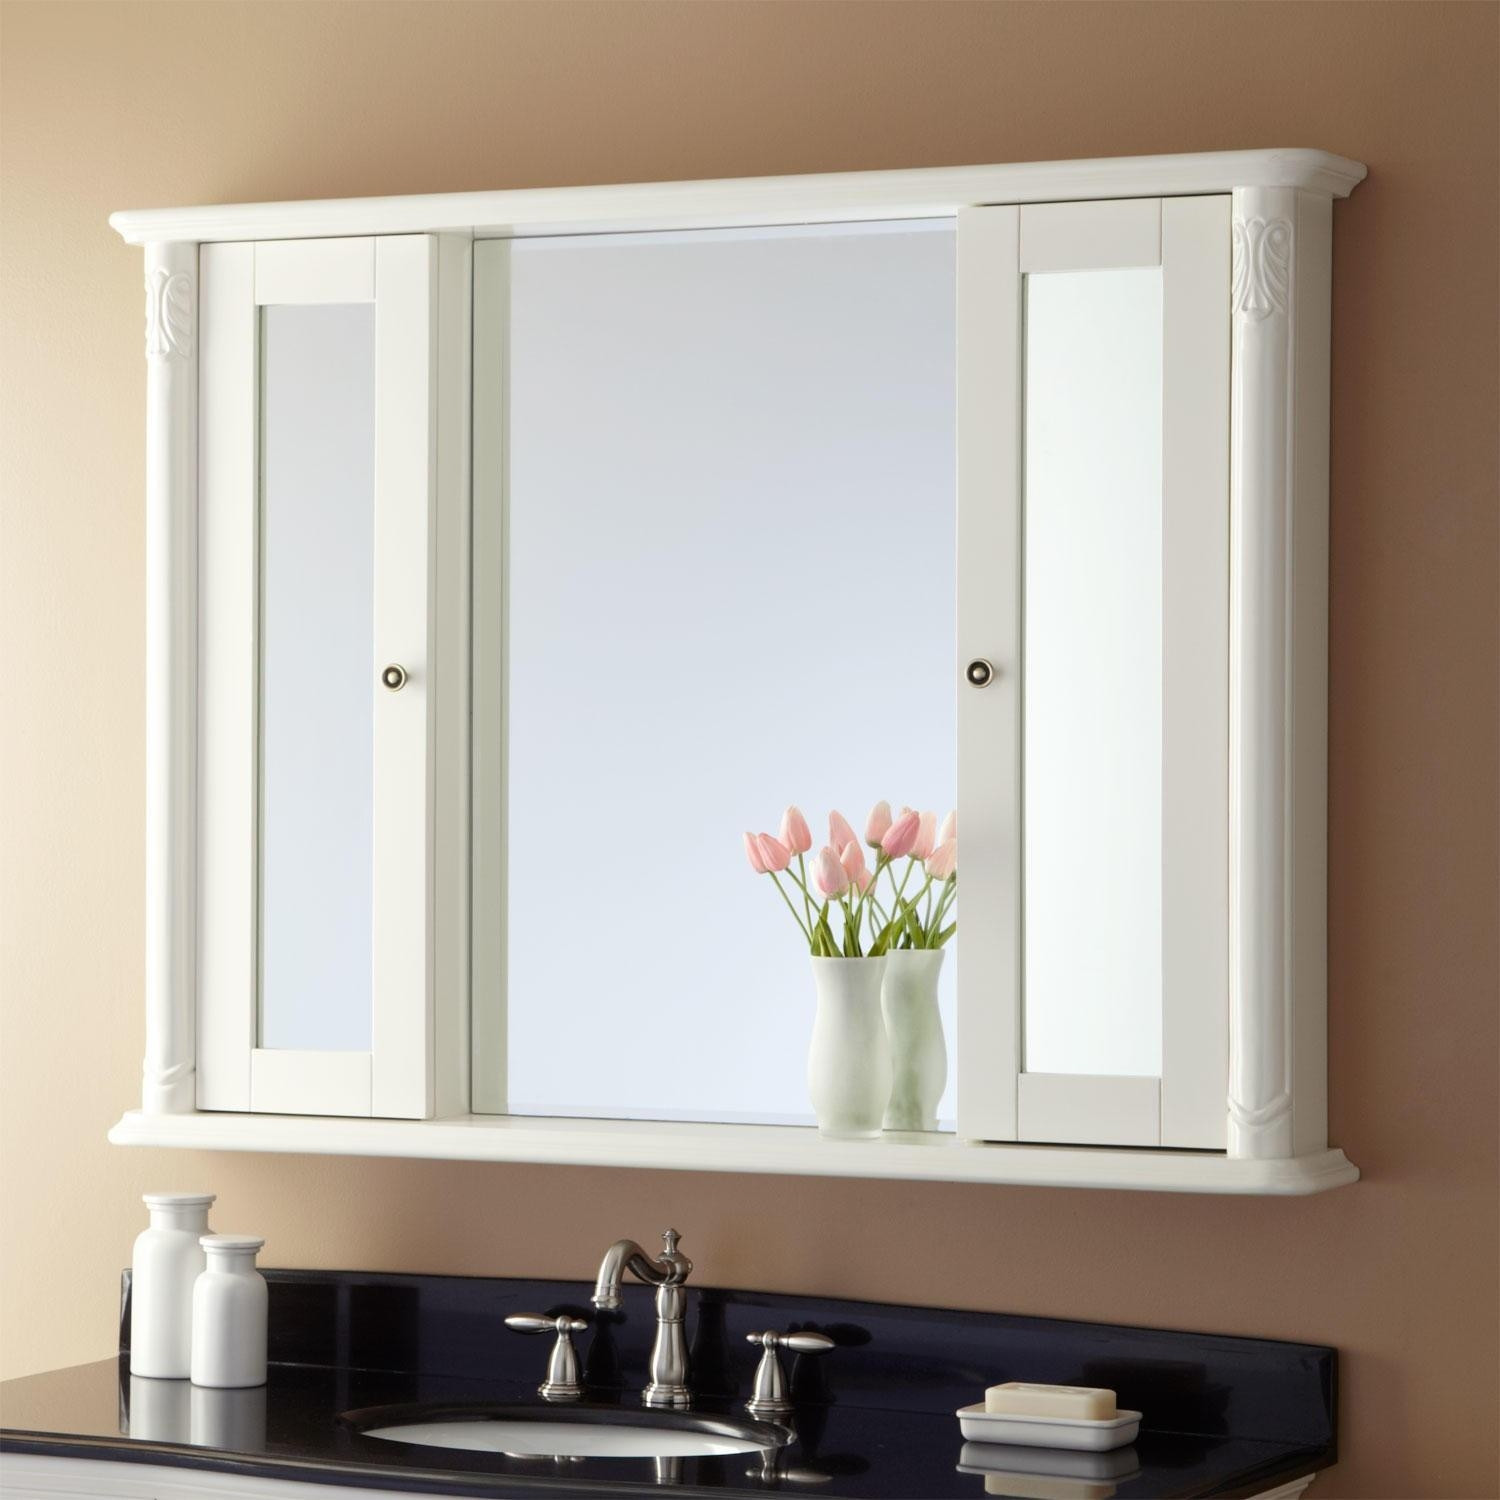 Bathroom Vanity Mirror Cabinet
 20 s Bathroom Vanity Mirrors With Medicine Cabinet